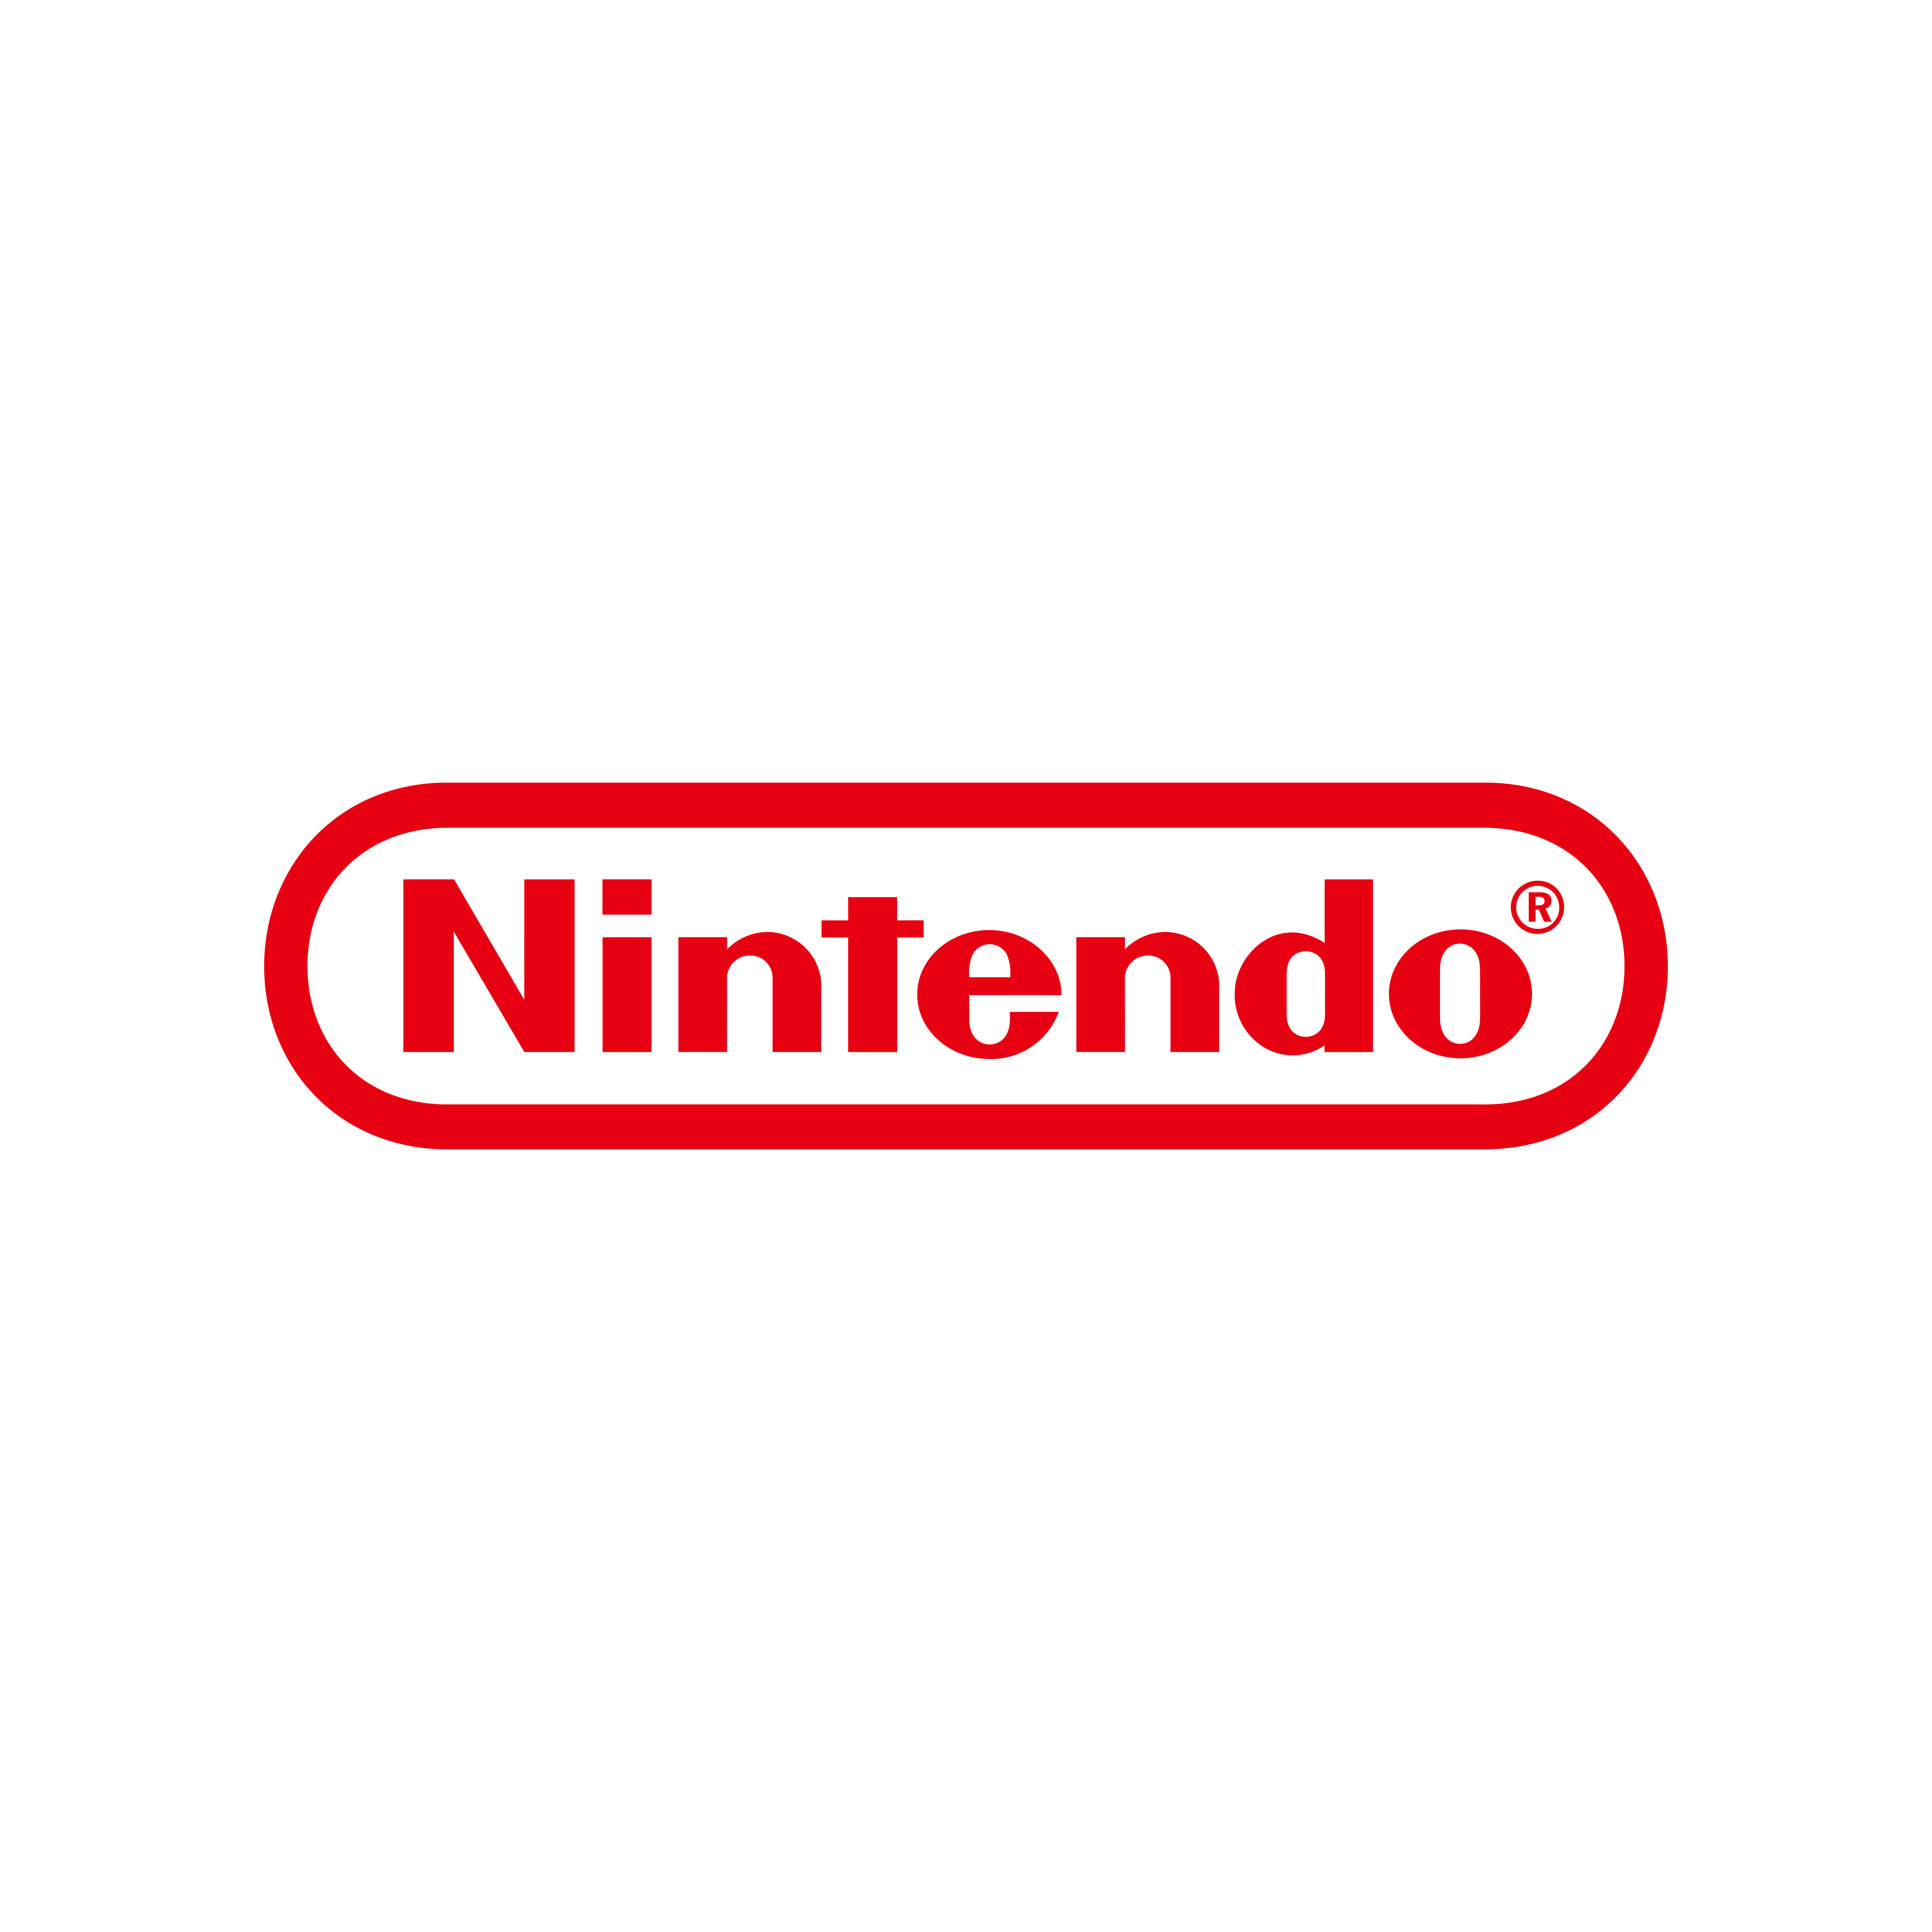 nintendo logo 0 - Nintendo Logo